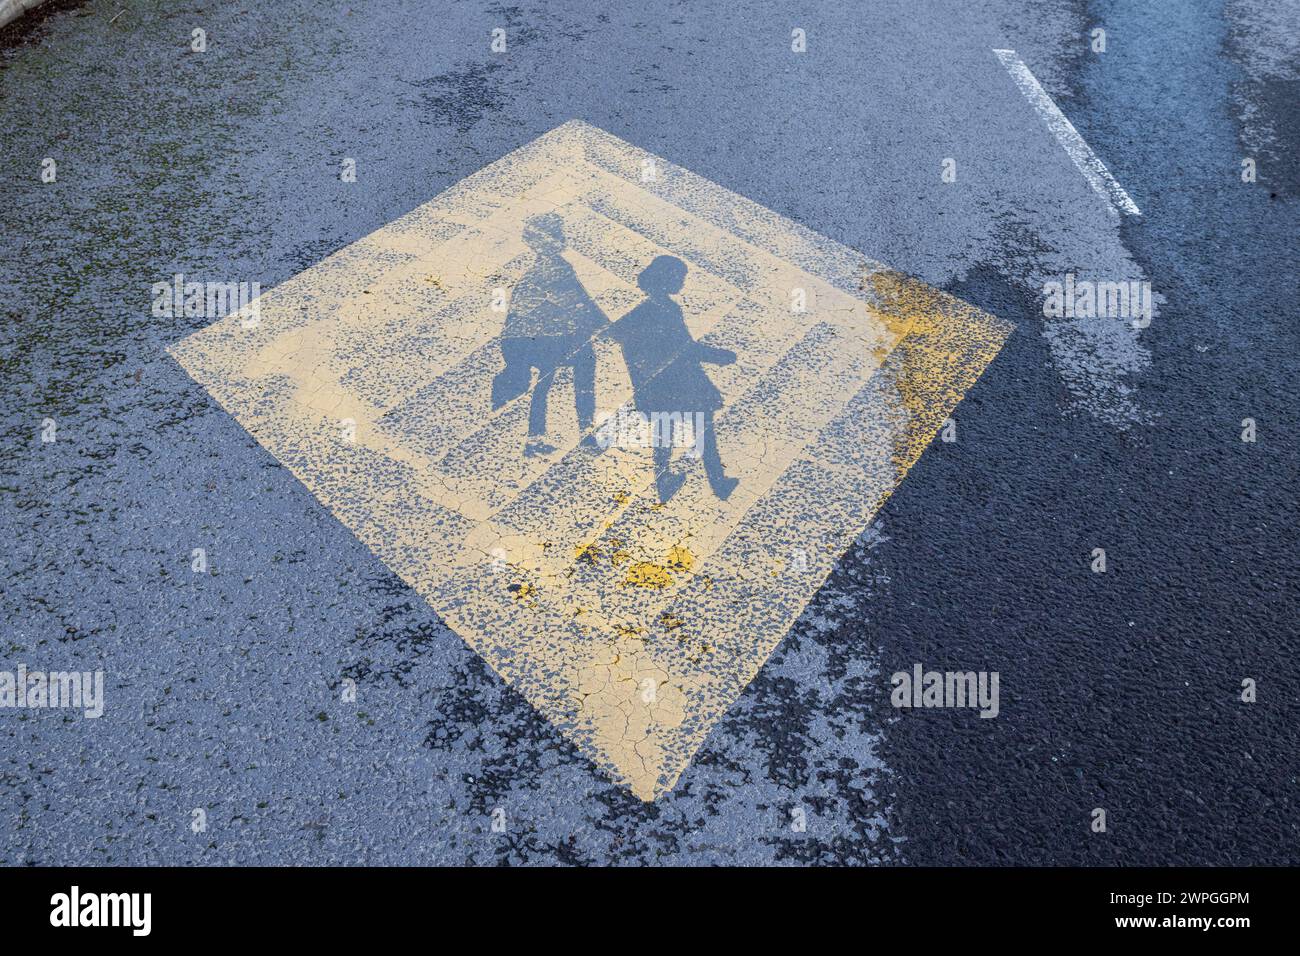 Simbolo di avvertenza stradale che indica la scuola davanti, Irlanda. Foto Stock